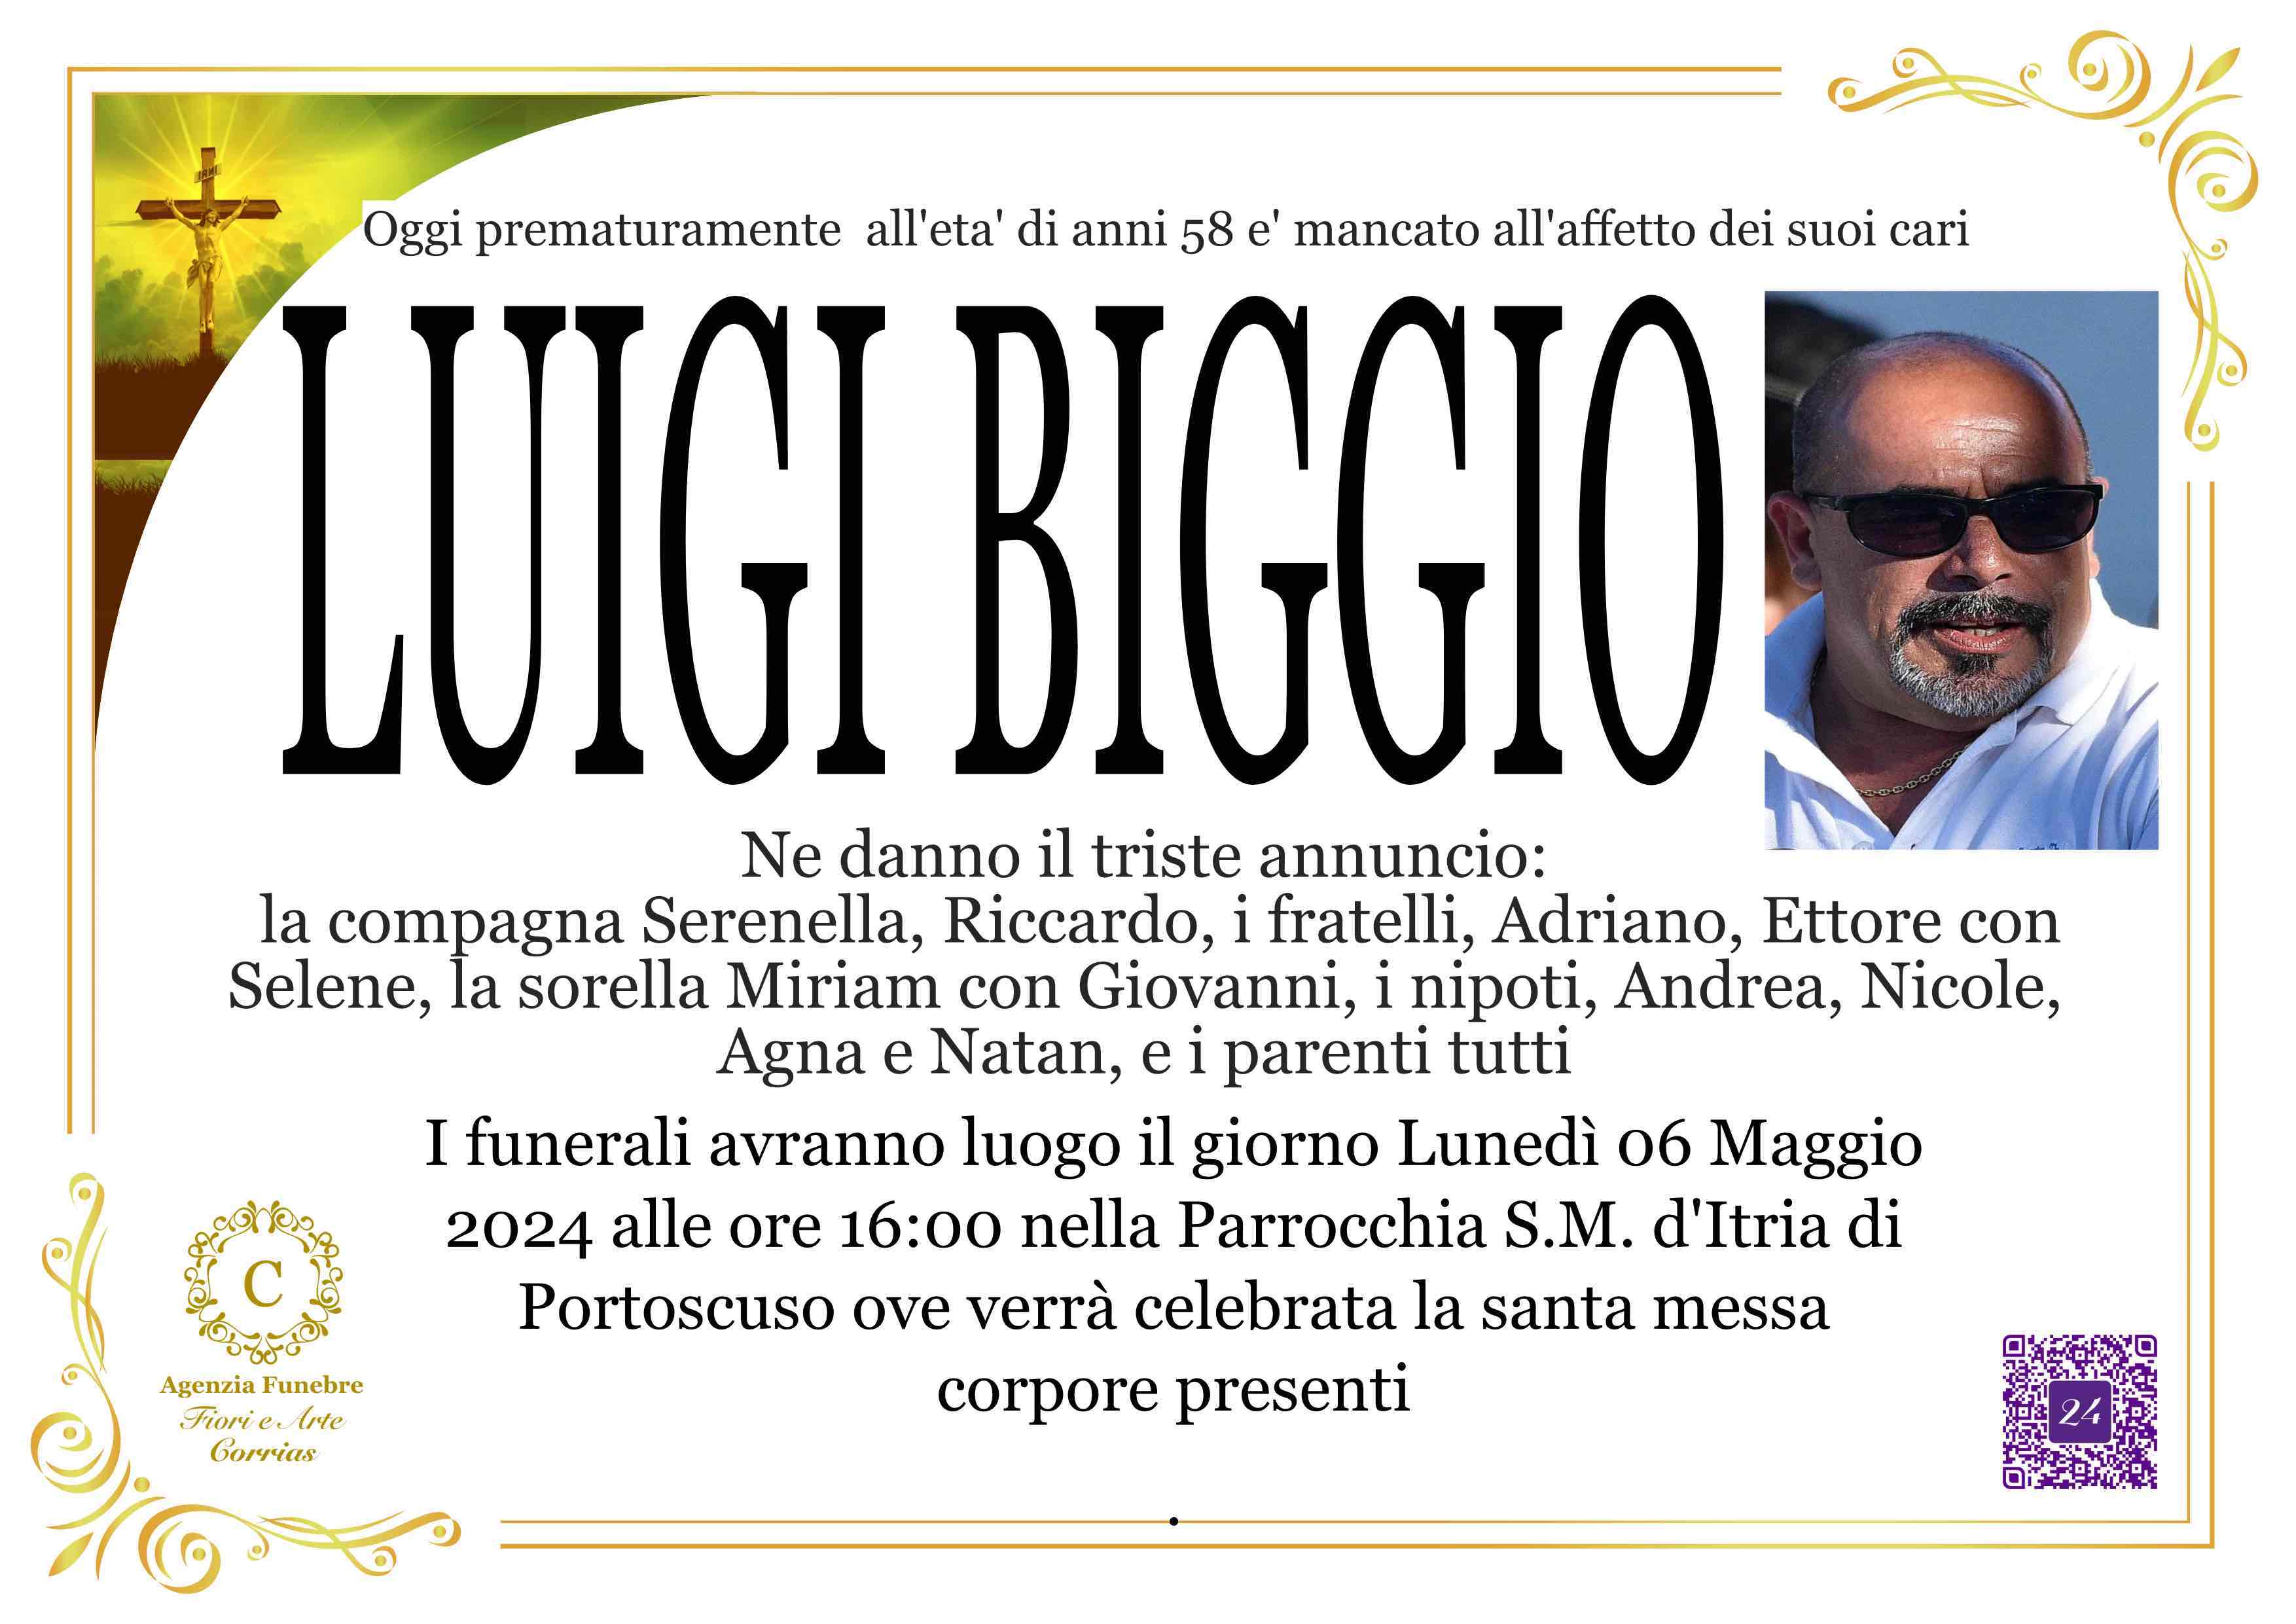 Luigi Biggio